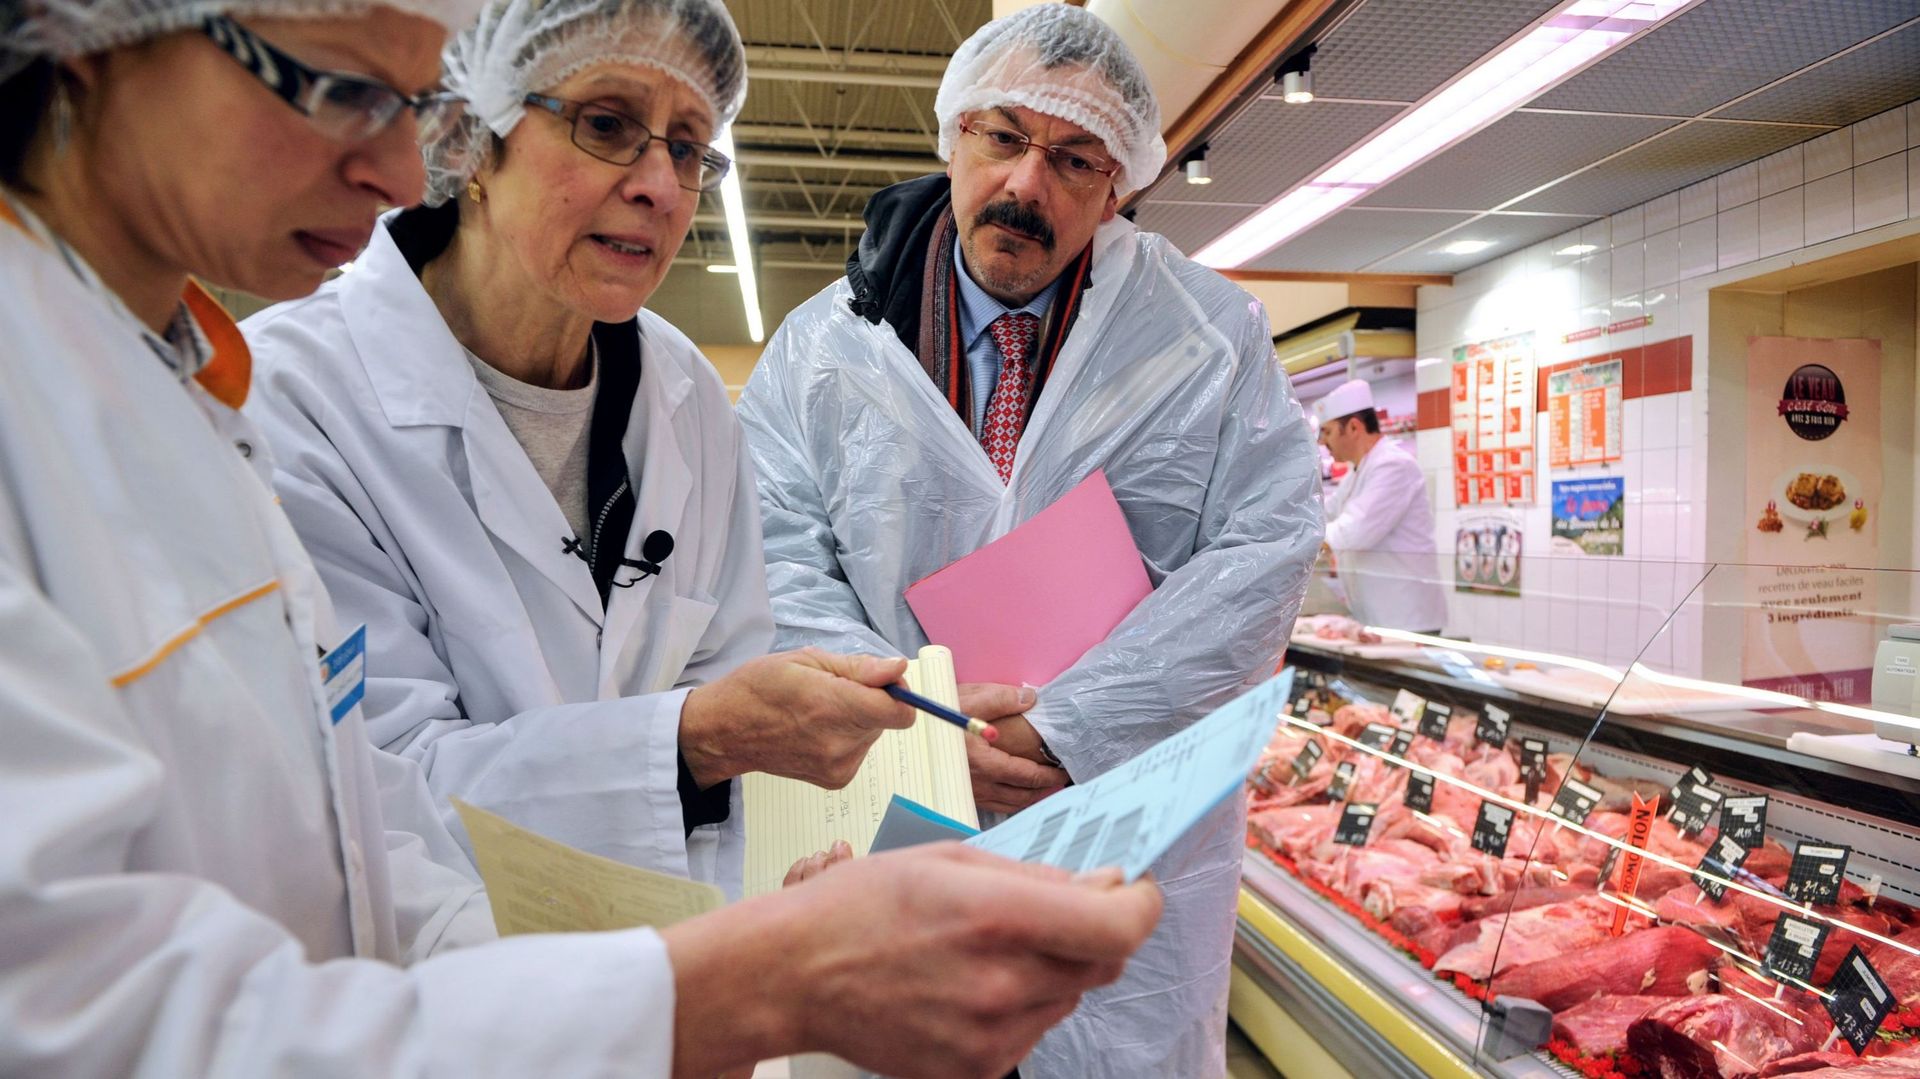 Des analystes vérifient la provenance du steak haché dans un supermarché français.